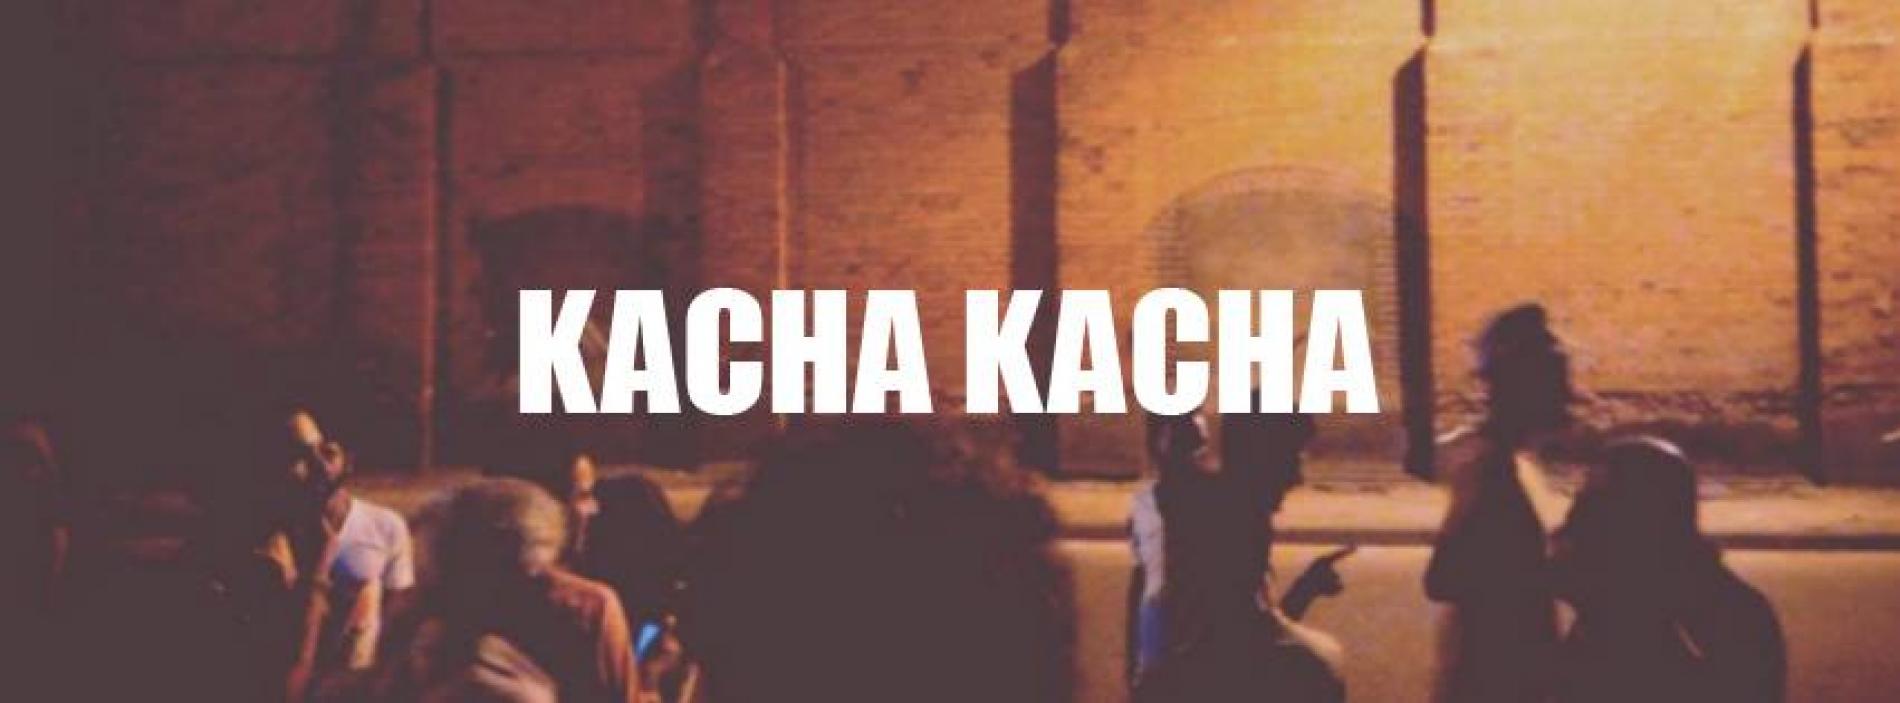 Kacha Kacha V